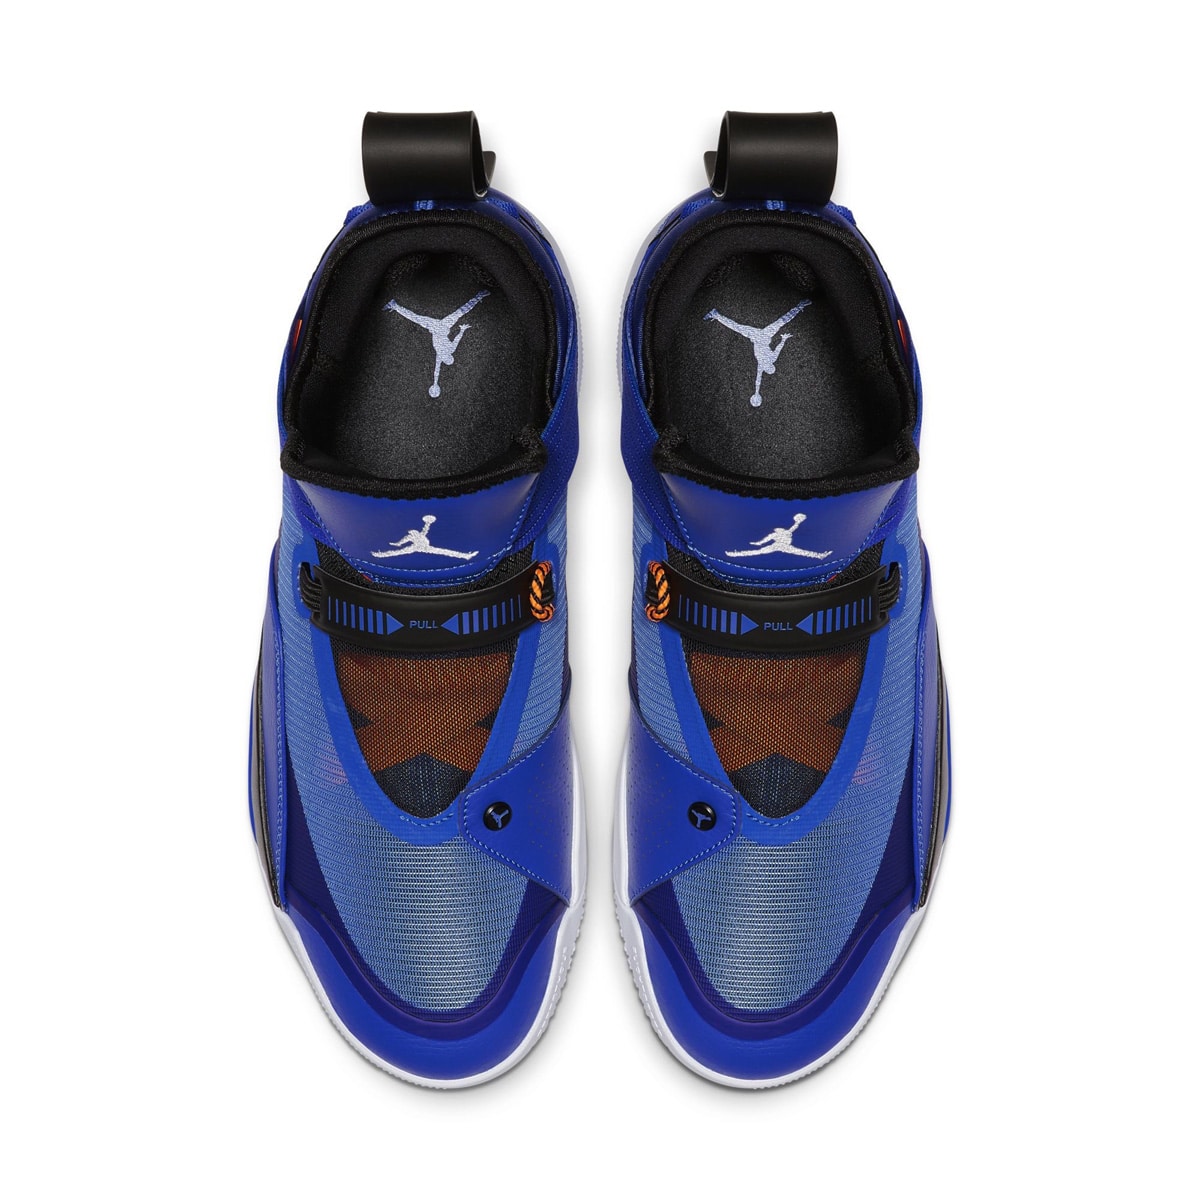 Air Jordan 33 SE Colorways to Release 